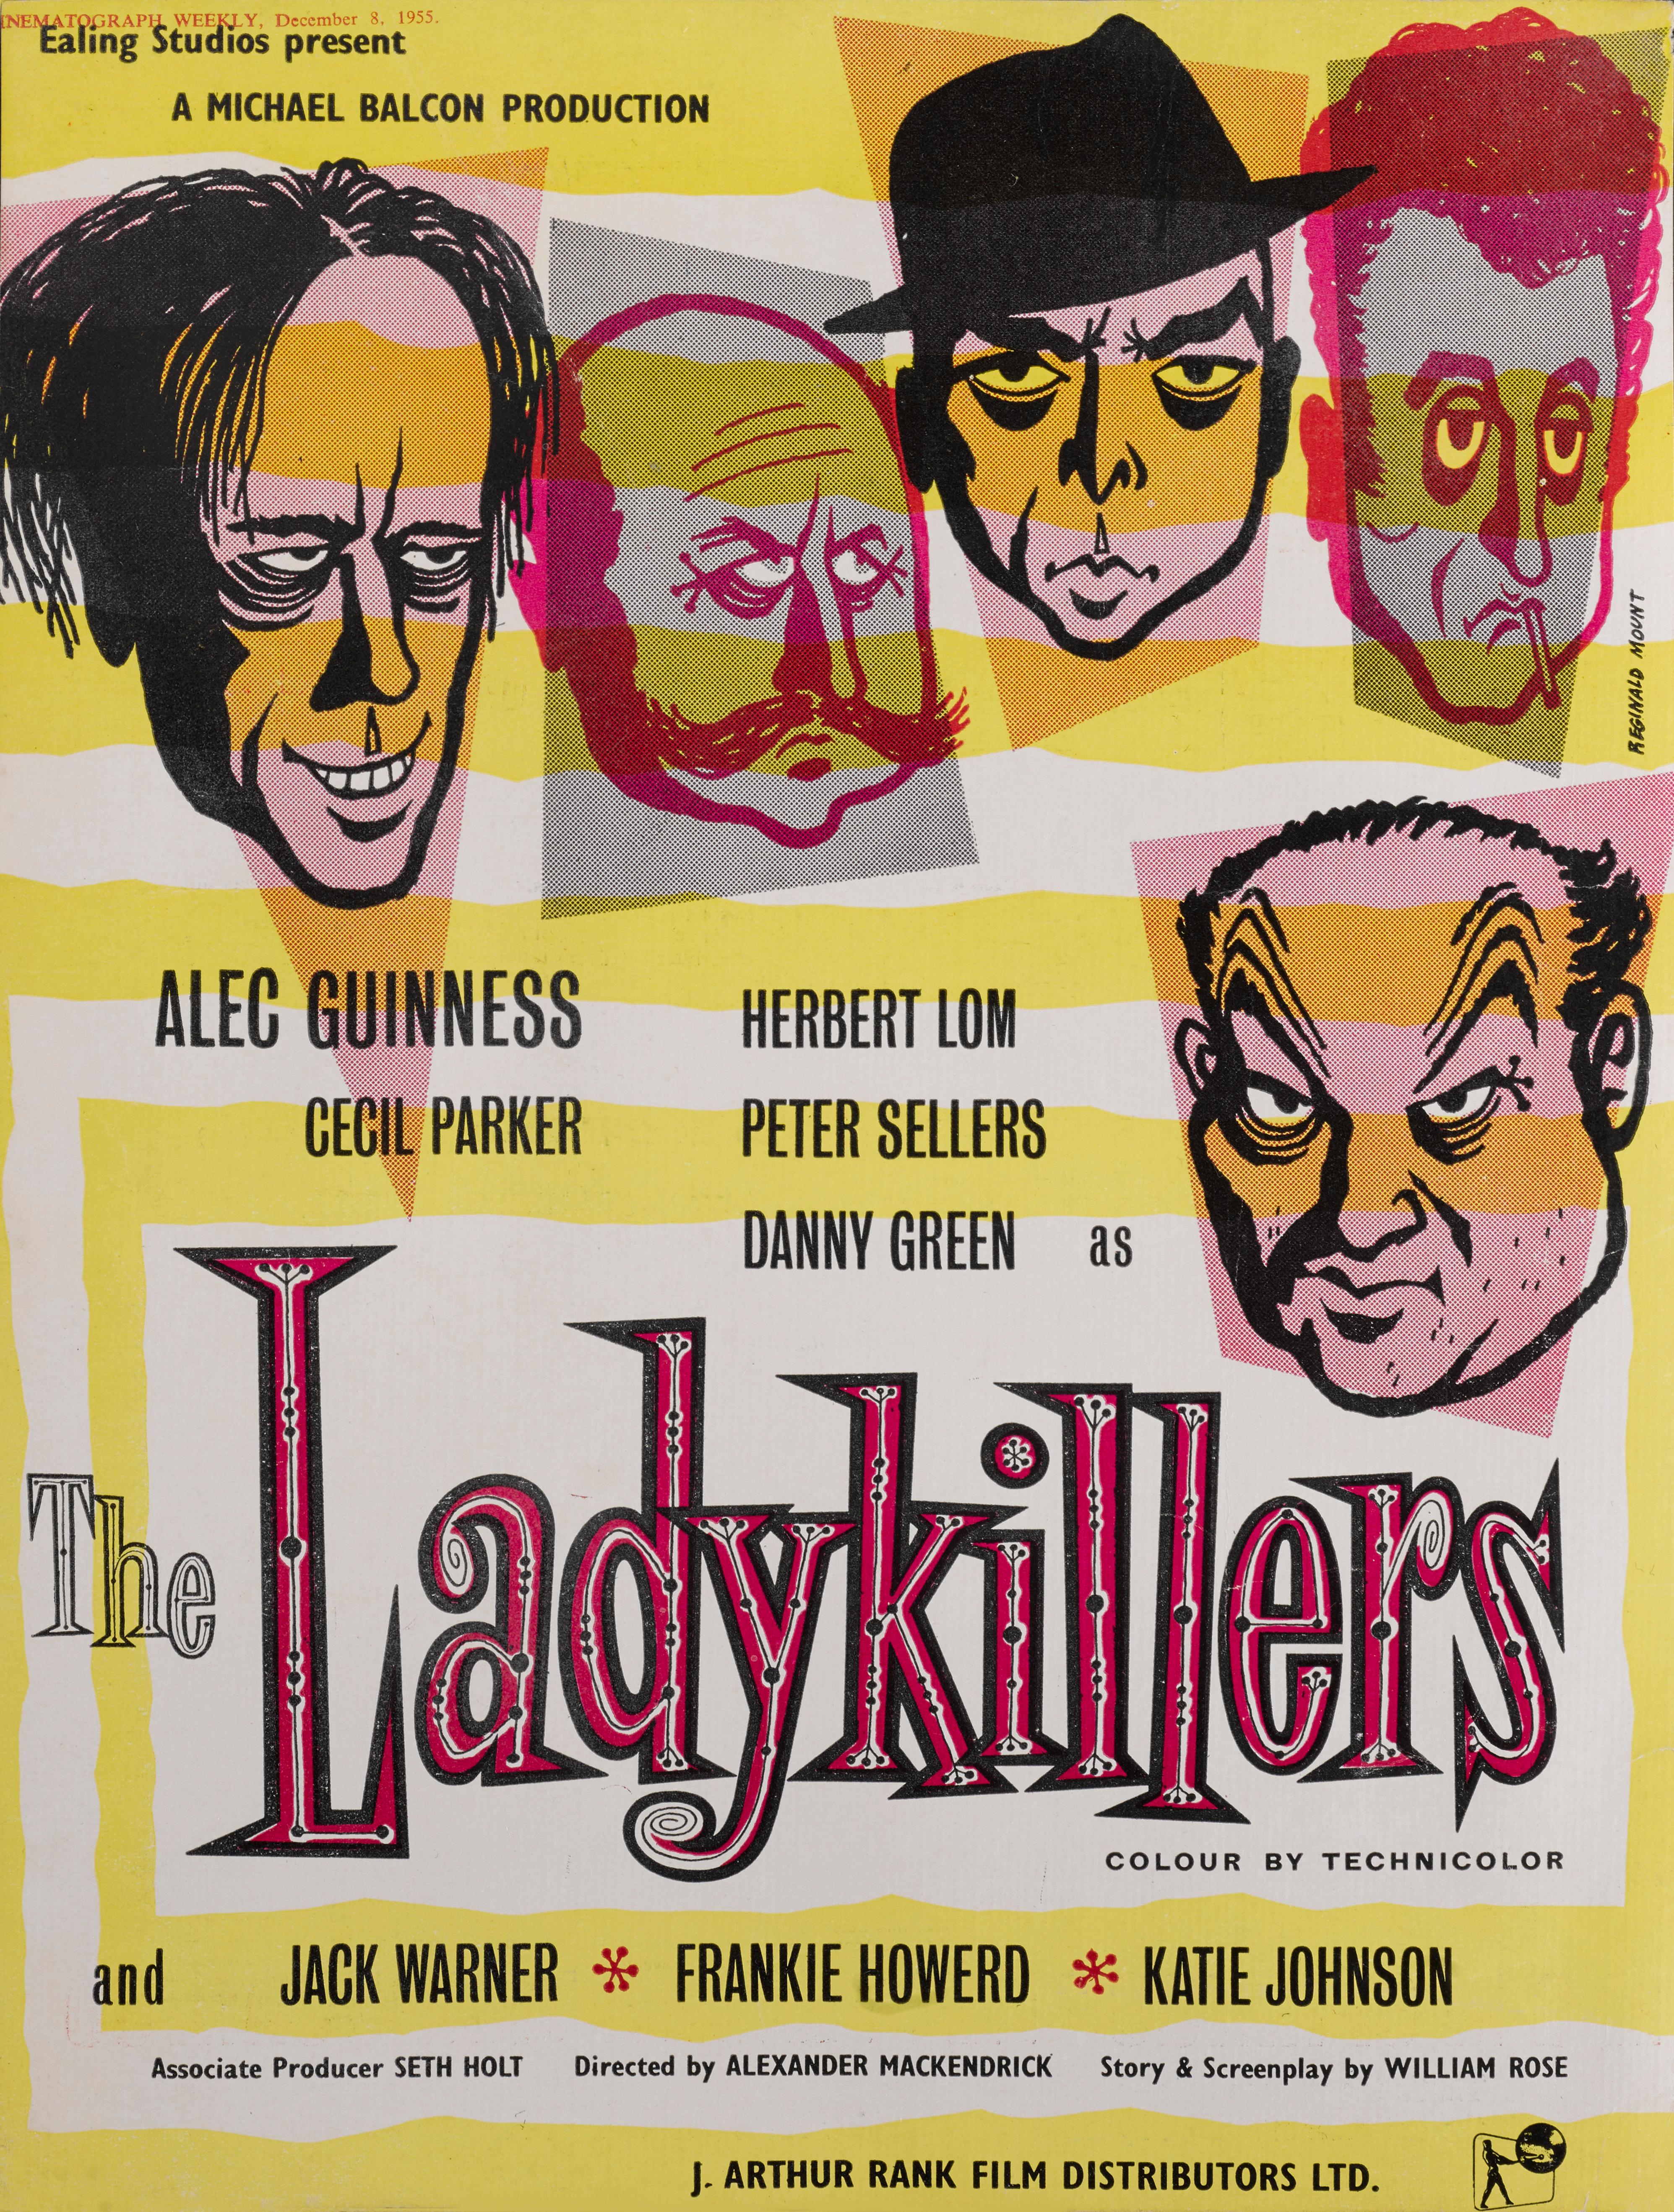 British Ladykillers